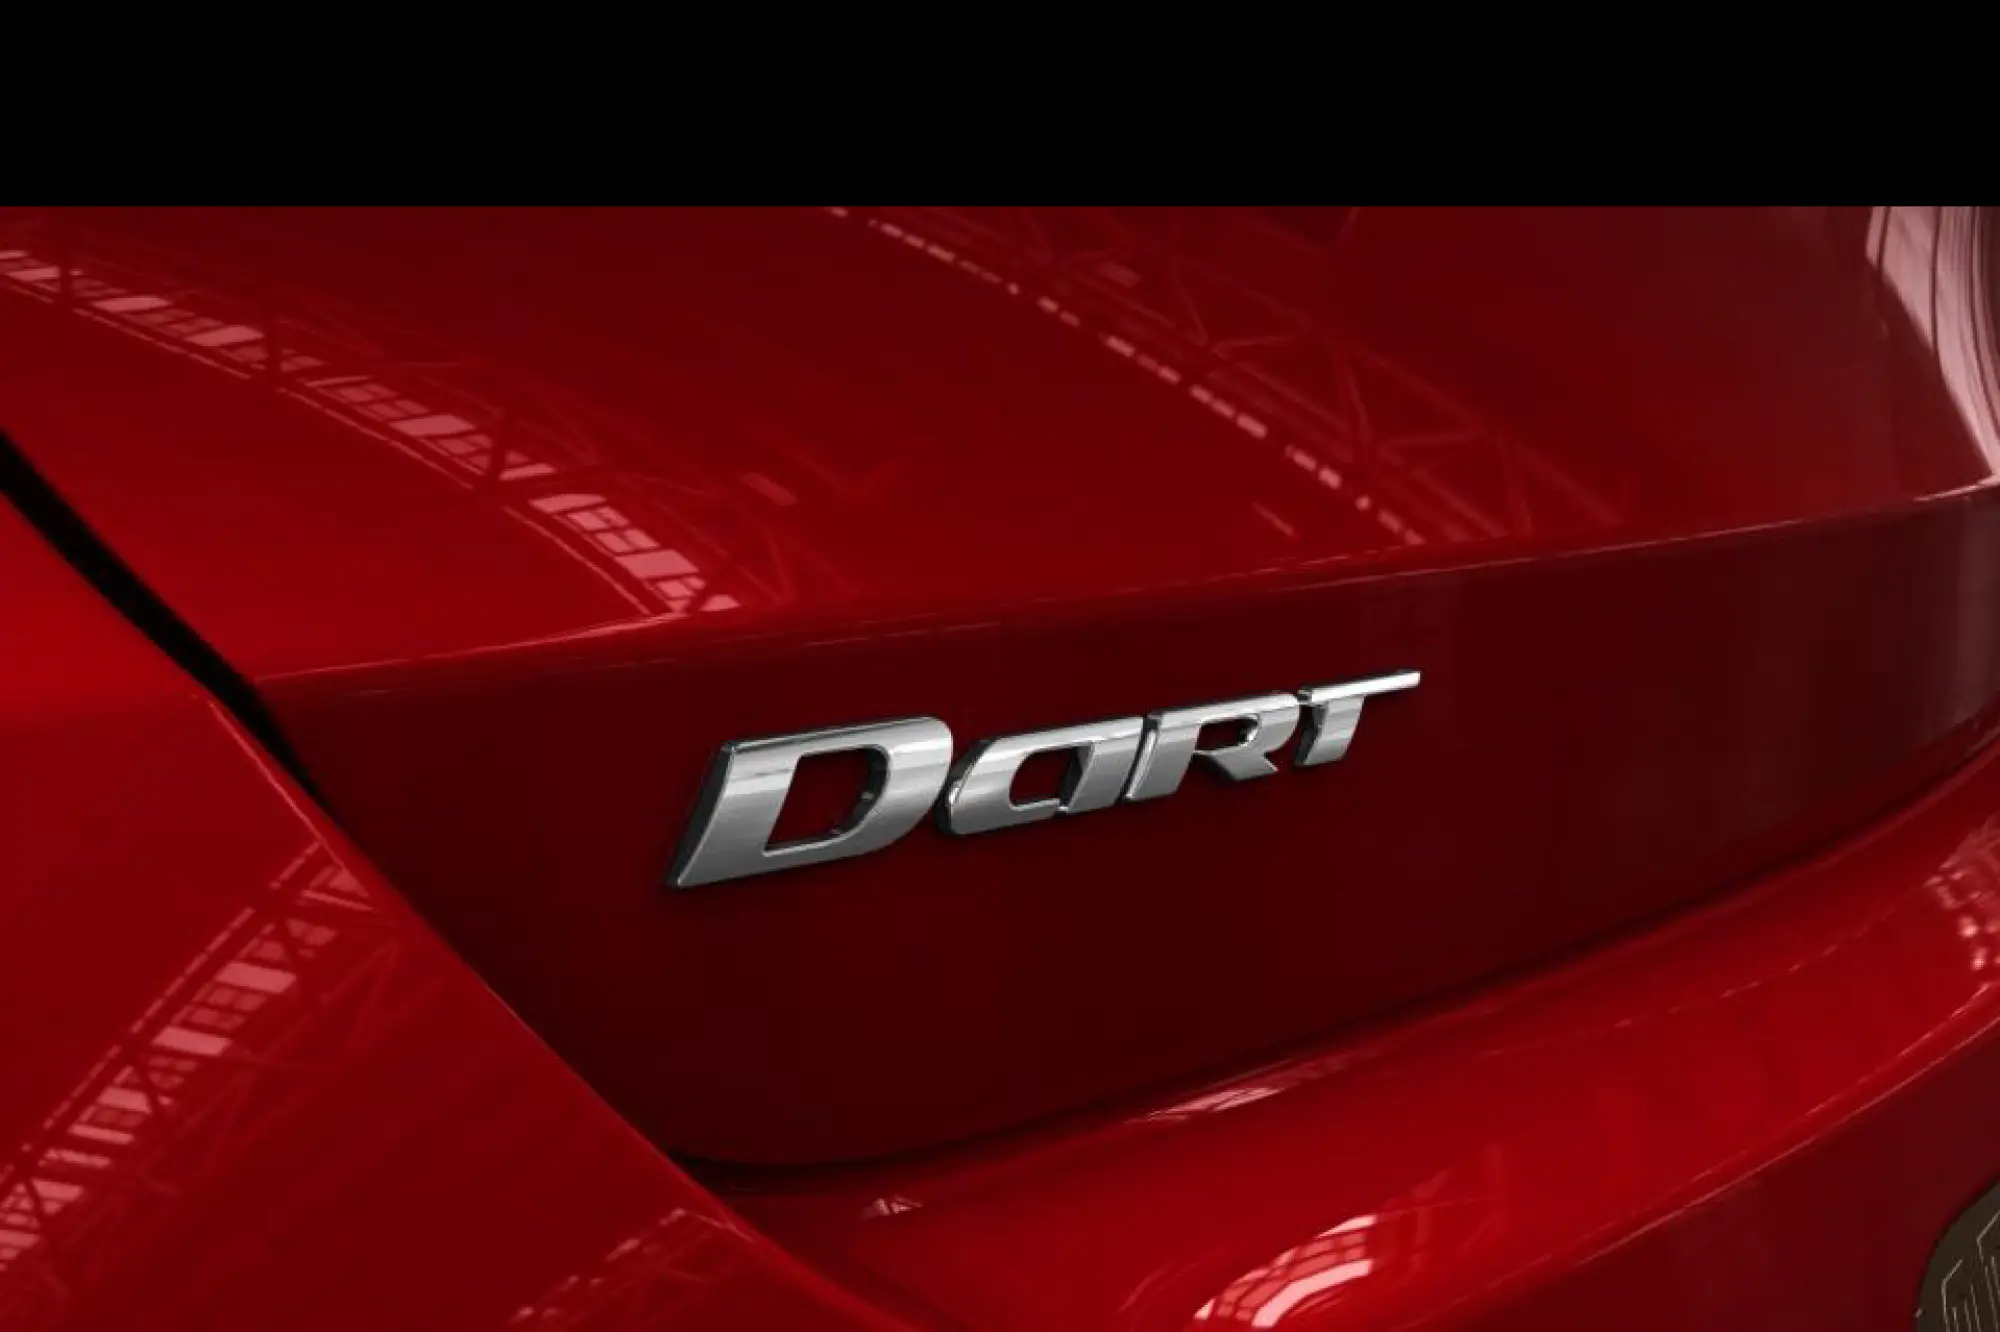 Anteprima Dodge Dart - 3